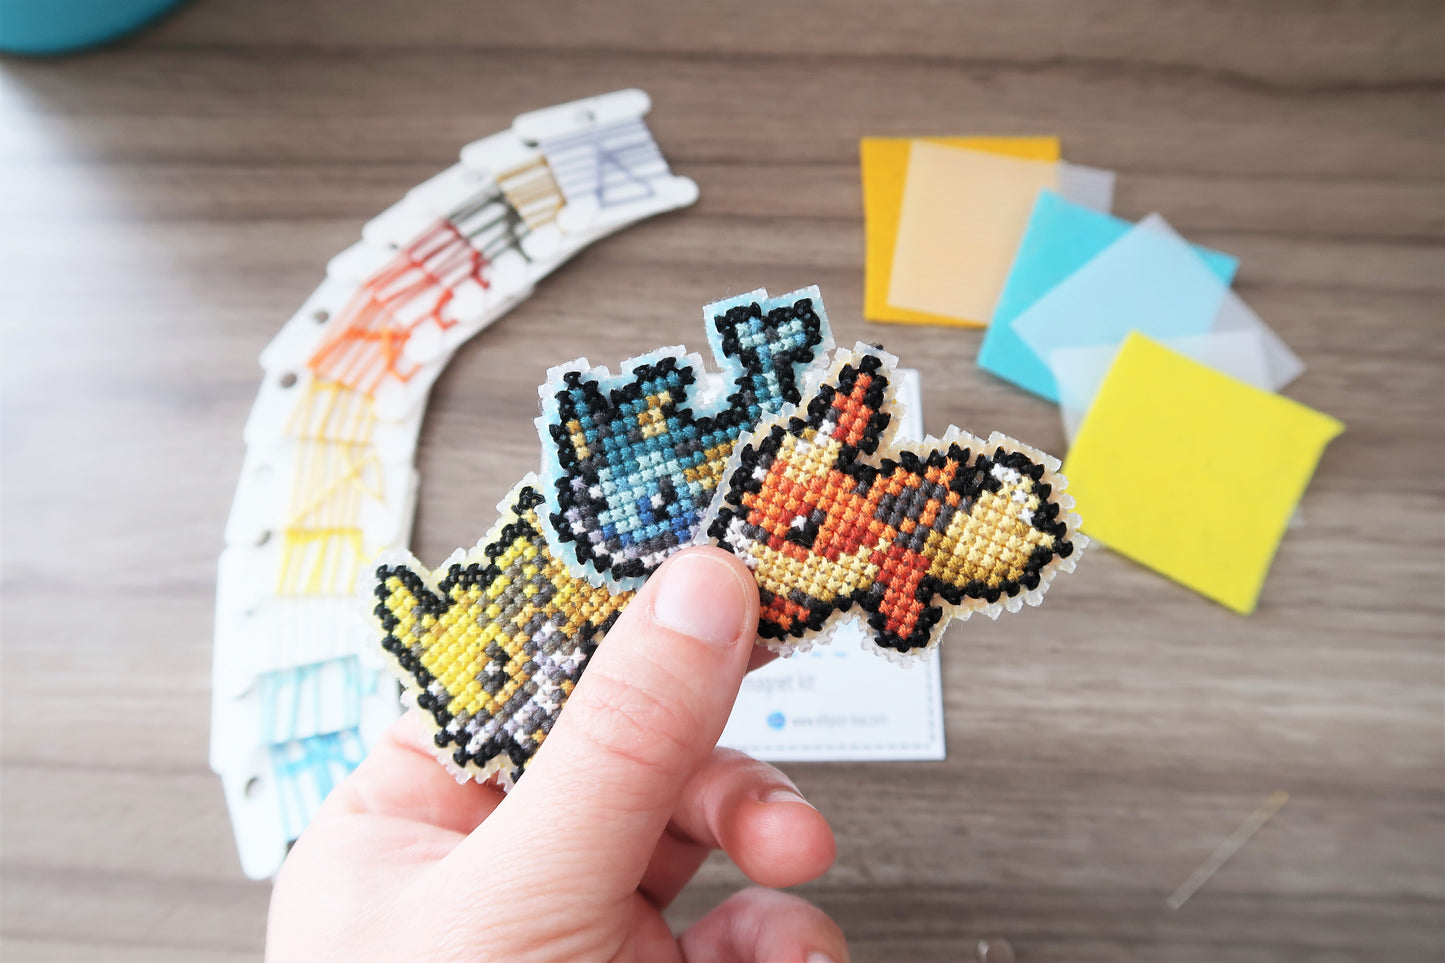 Flareon, Vaporeon and Jolteon from Pokemon - Cross stitch magnet kit